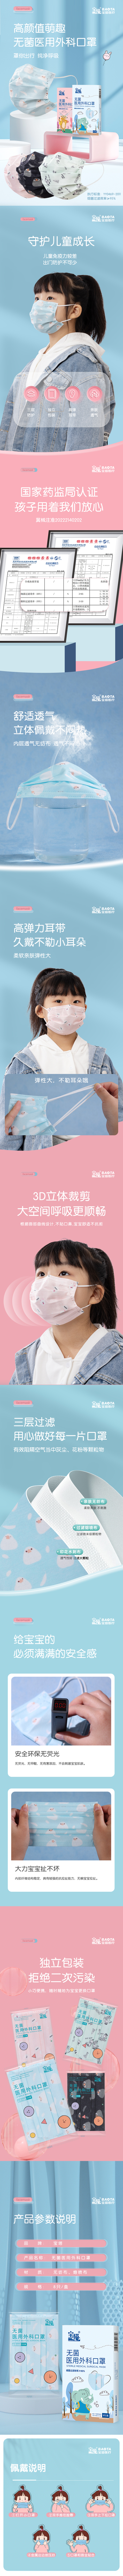 7-无菌医用儿童口罩详情页--新包装.jpg